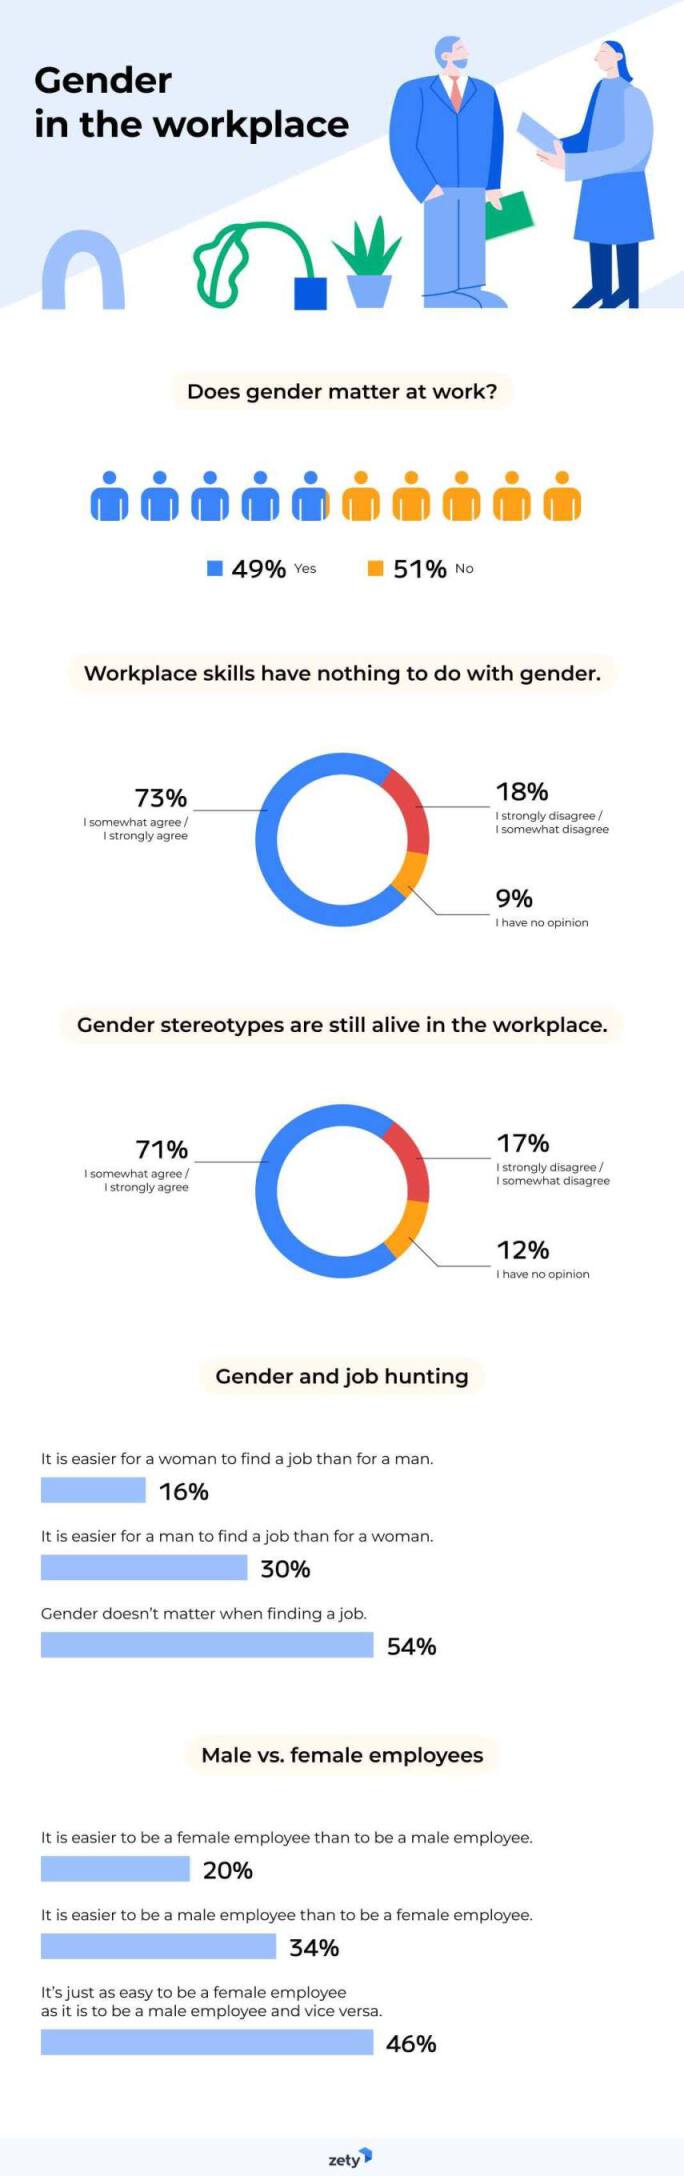 Gender Gap at Work